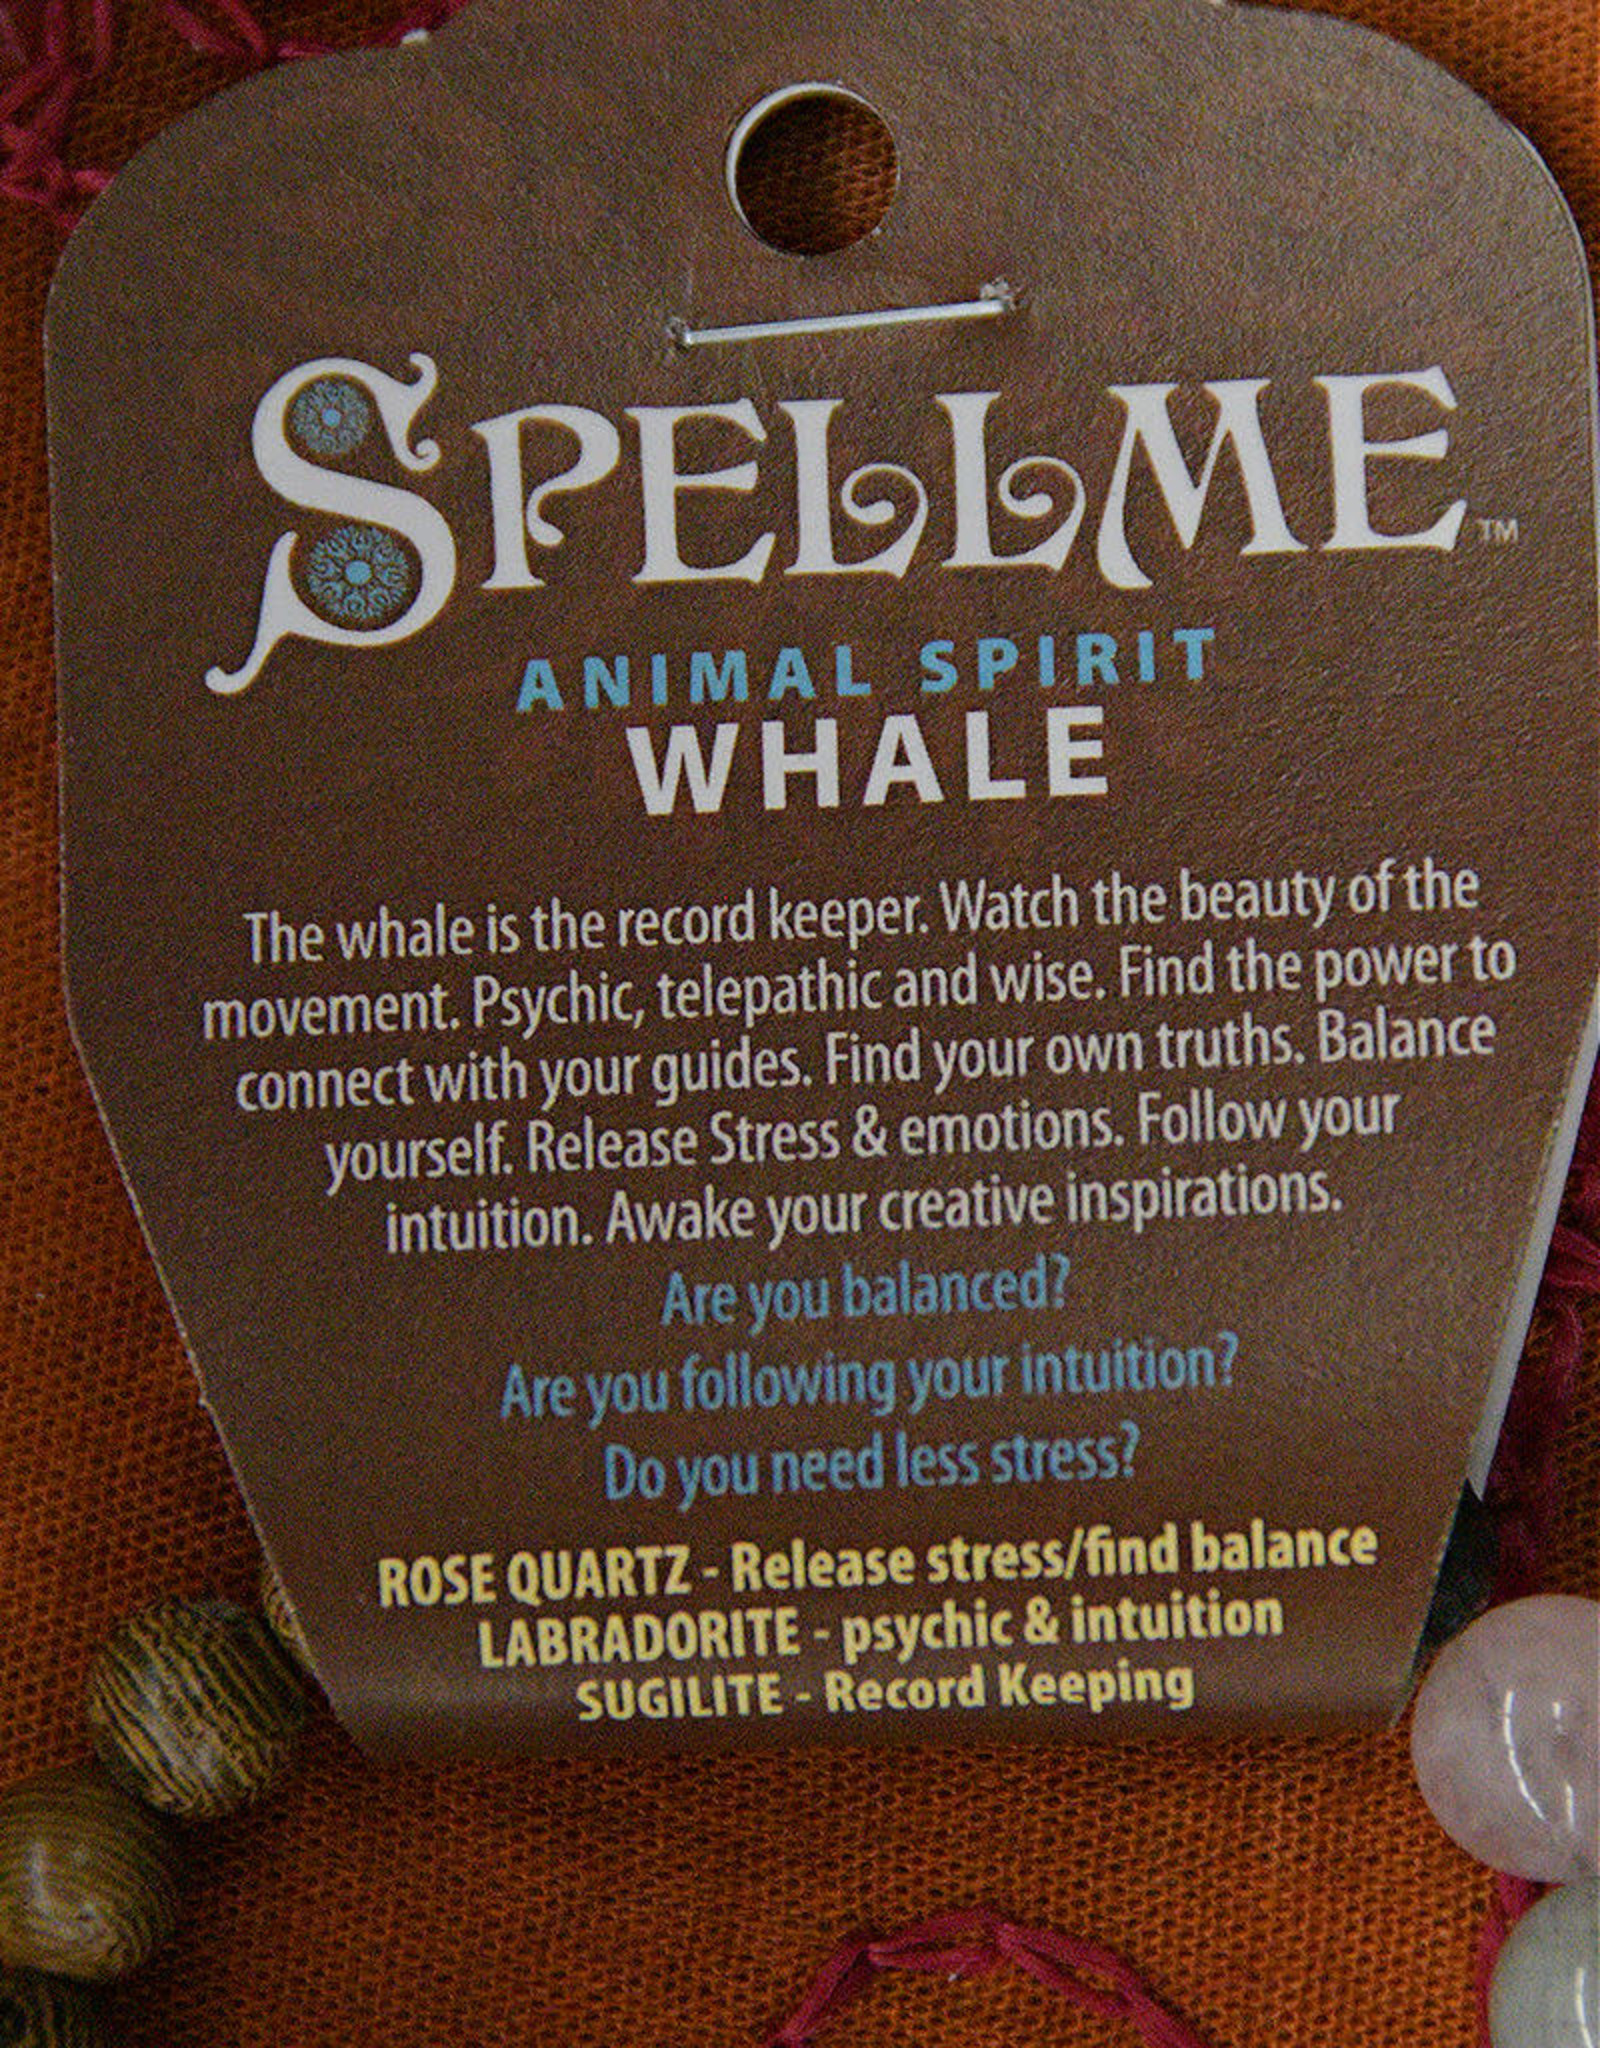 Spell Me Spell Me Bracelet - Whale